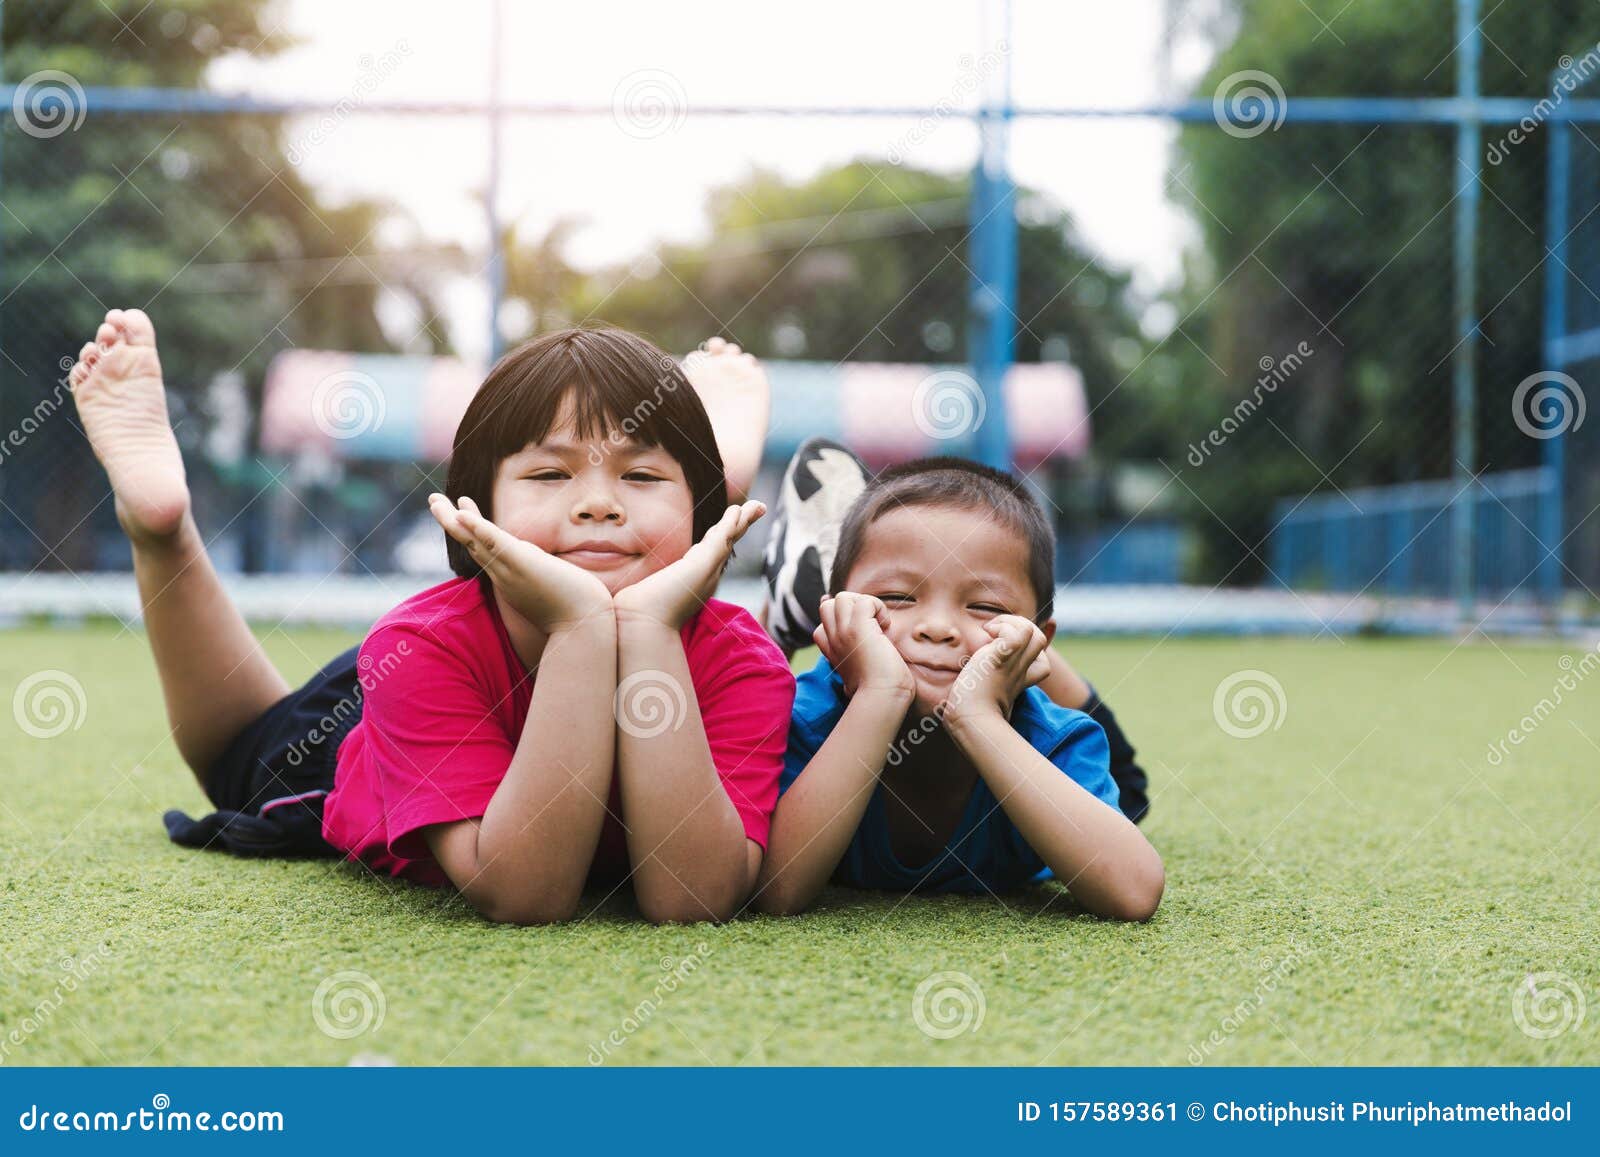 兄妹在公园玩乐的照片 两个快乐的孩子躺在青草上 小女孩和男孩库存图片 图片包括有兄妹在公园玩乐的照片 两个快乐的孩子躺在青草上 小女孩和男孩